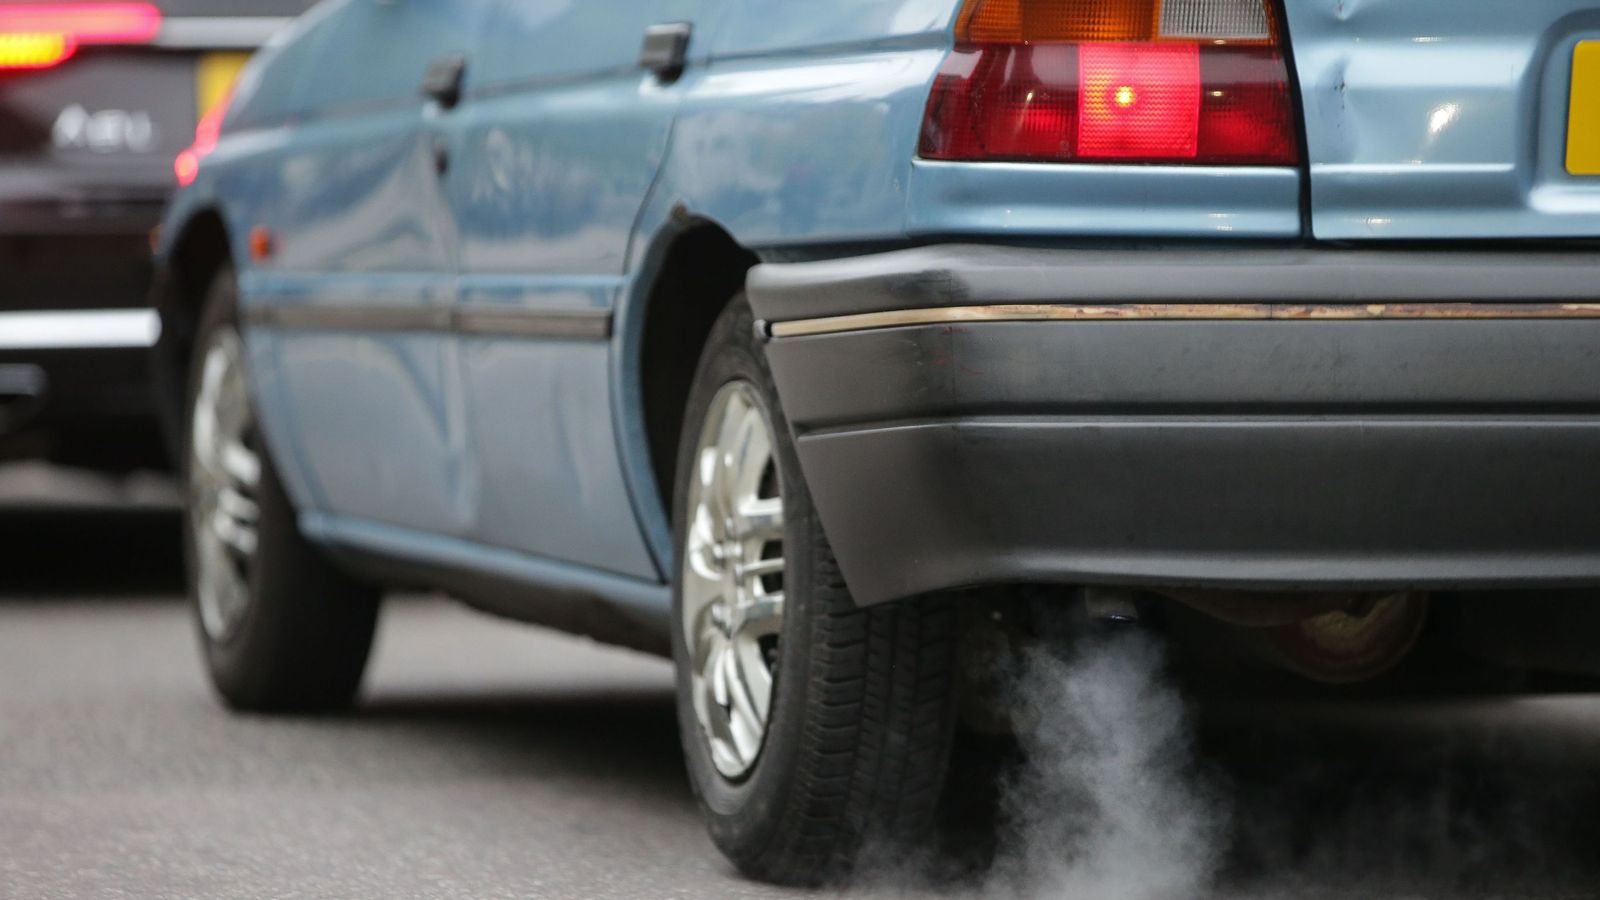 EU takes UK to court over air quality breaches | Politics News | Sky News